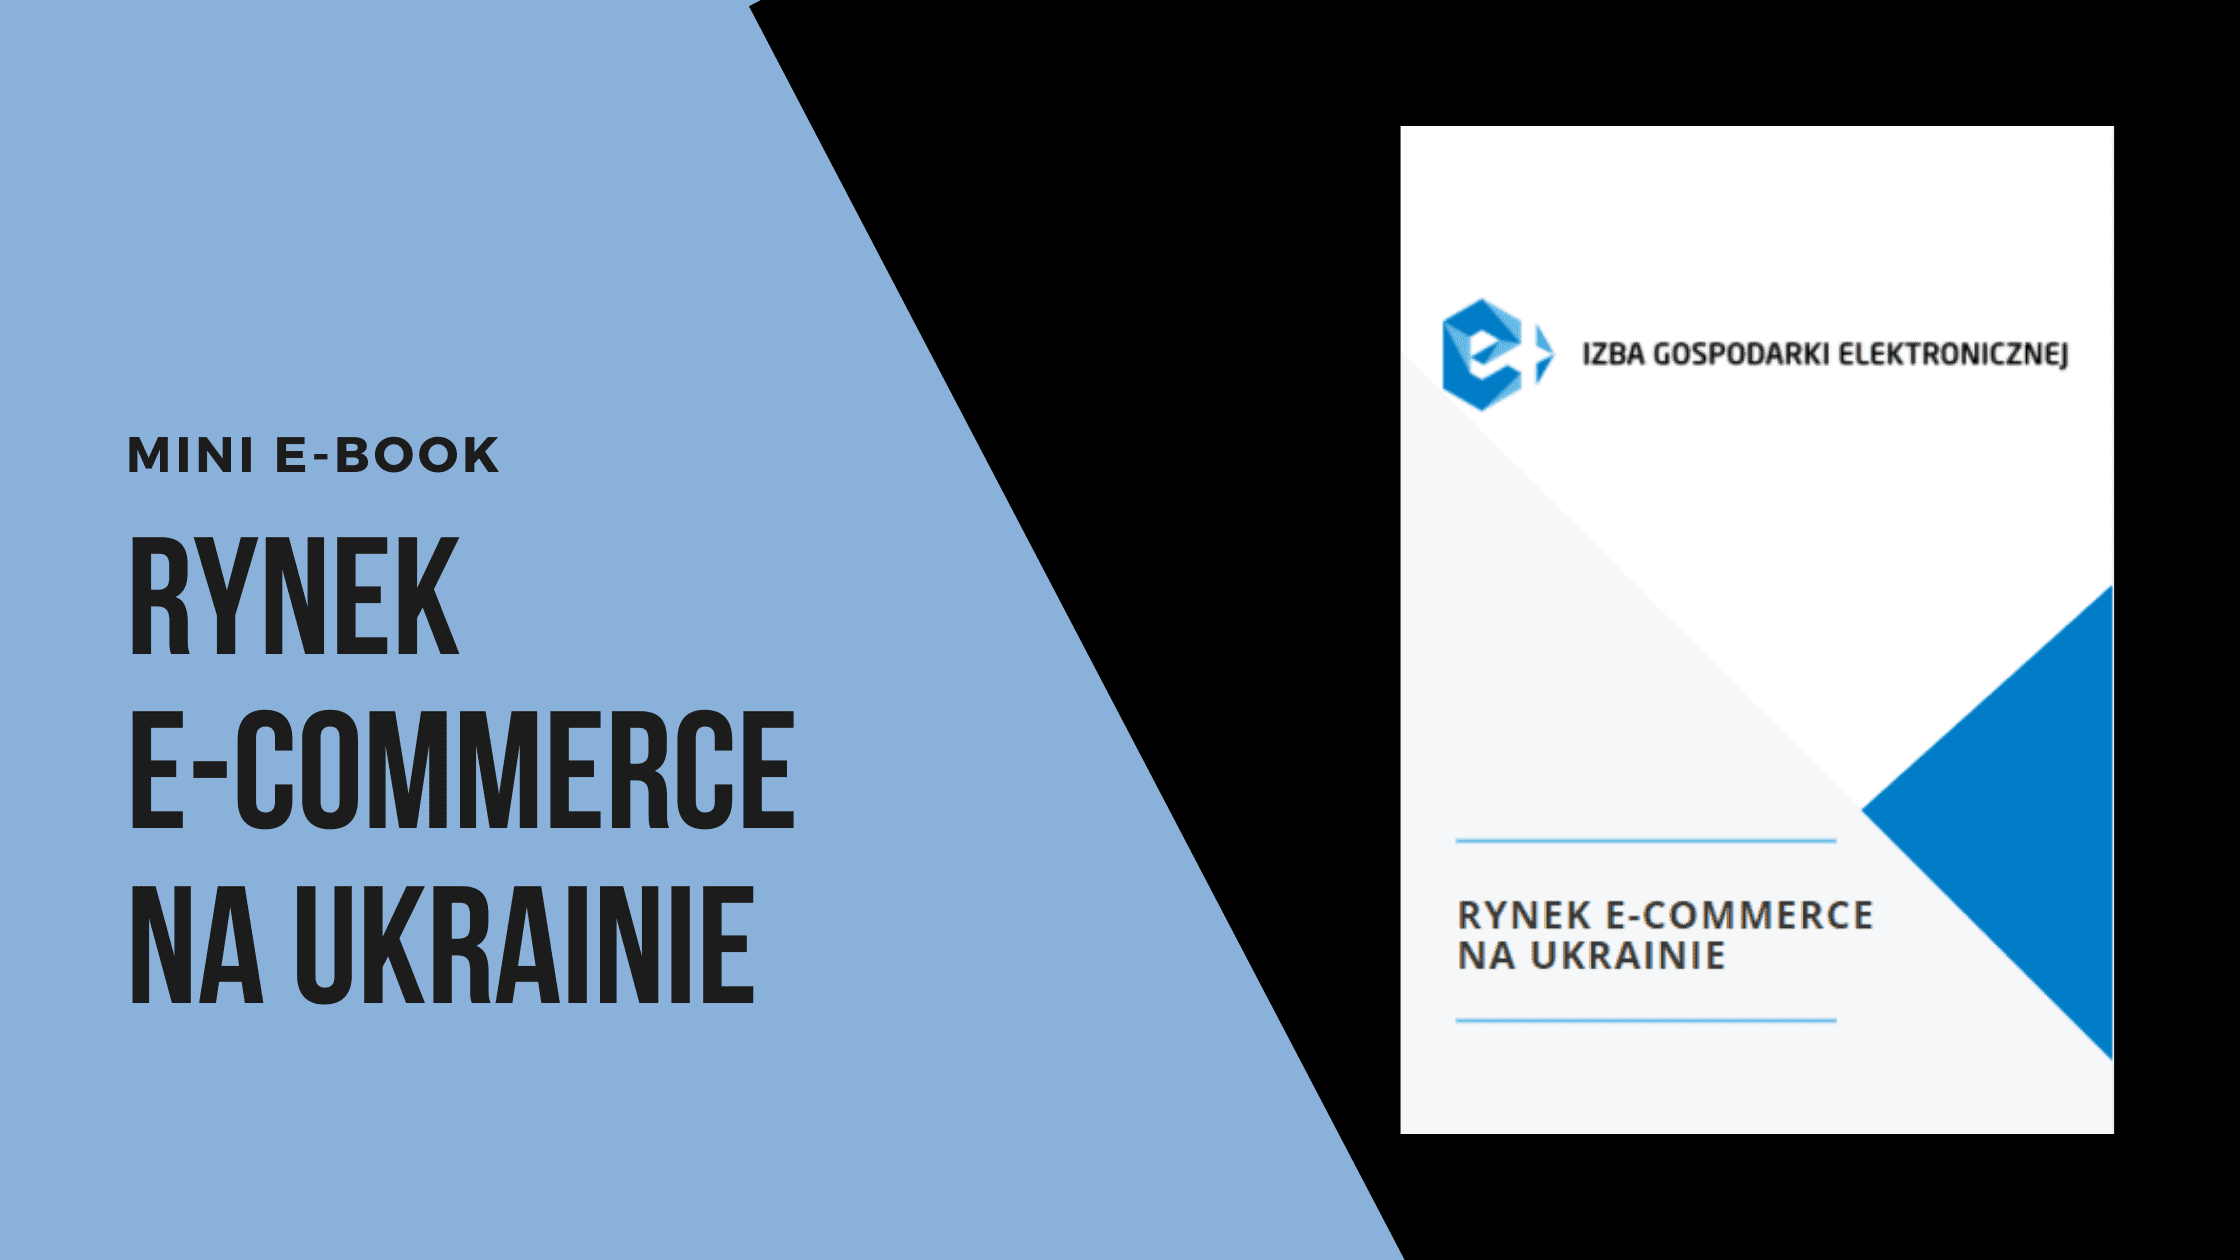 Rynek e-commerce na Ukrainie